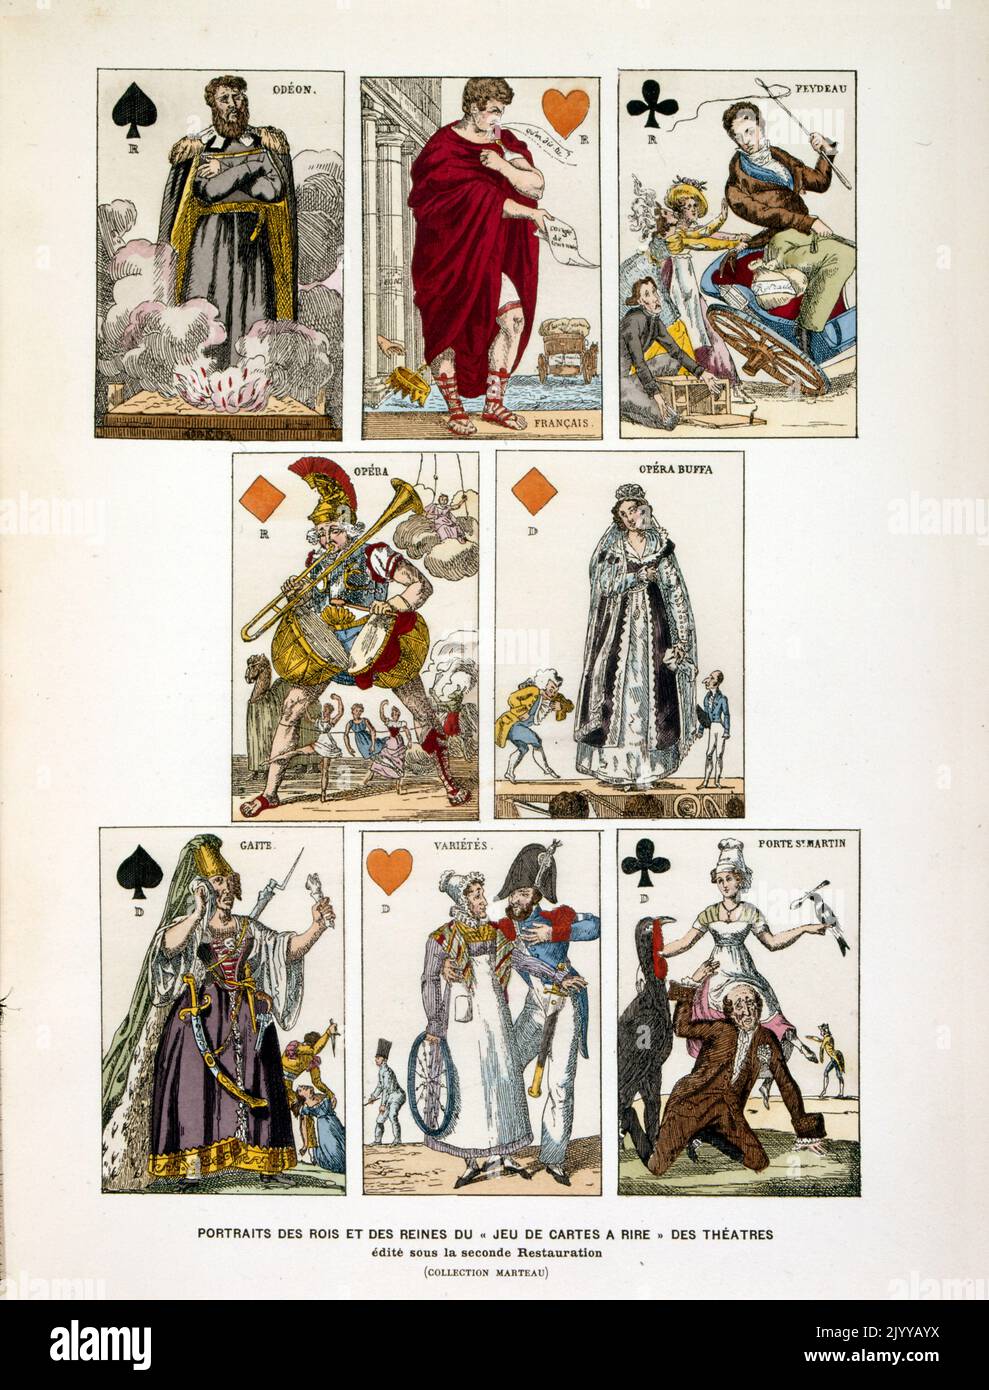 Illustration colorée des cartes à jouer avec des portraits de rois et de reines, des cartes humoristiques du théâtre. Imprimé lors de la deuxième restauration, partie de la collection marteau. Banque D'Images